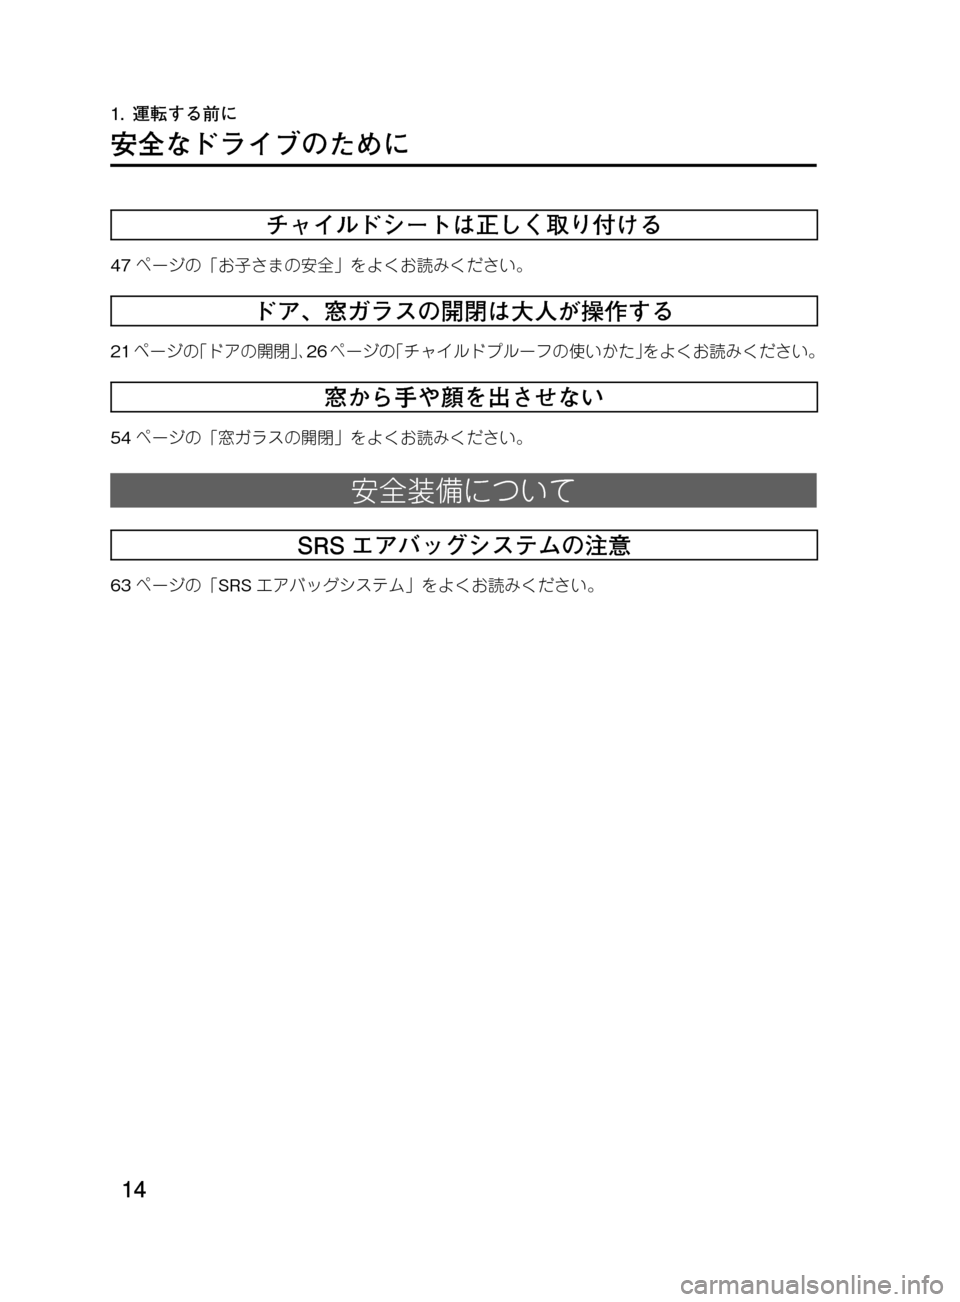 MAZDA MODEL DEMIO 2011  デミオ｜取扱説明書 (in Japanese) ��
��P�S�N��/�P���% 